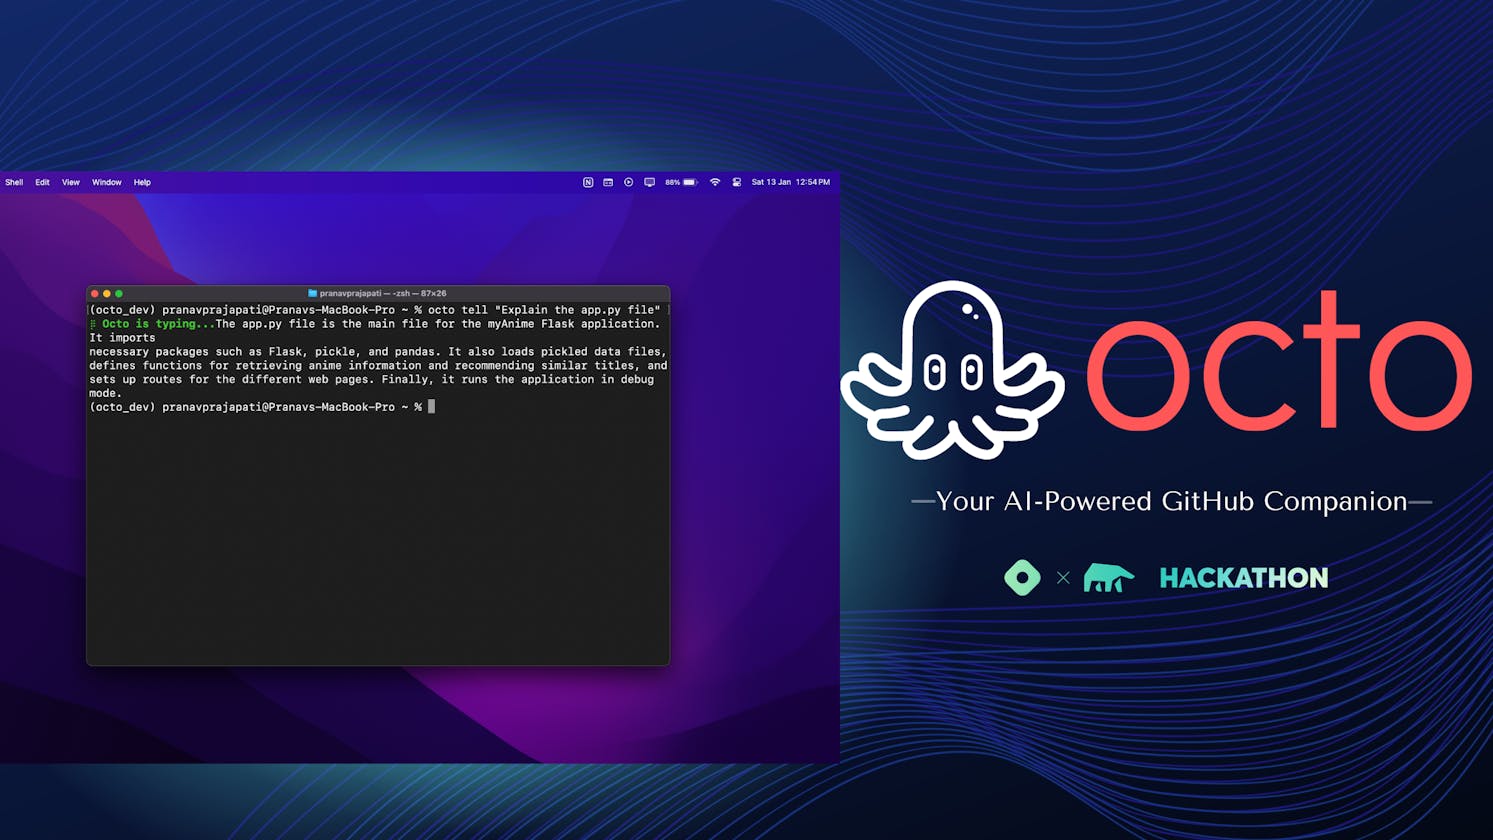 Octo - Your AI-Powered GitHub Companion